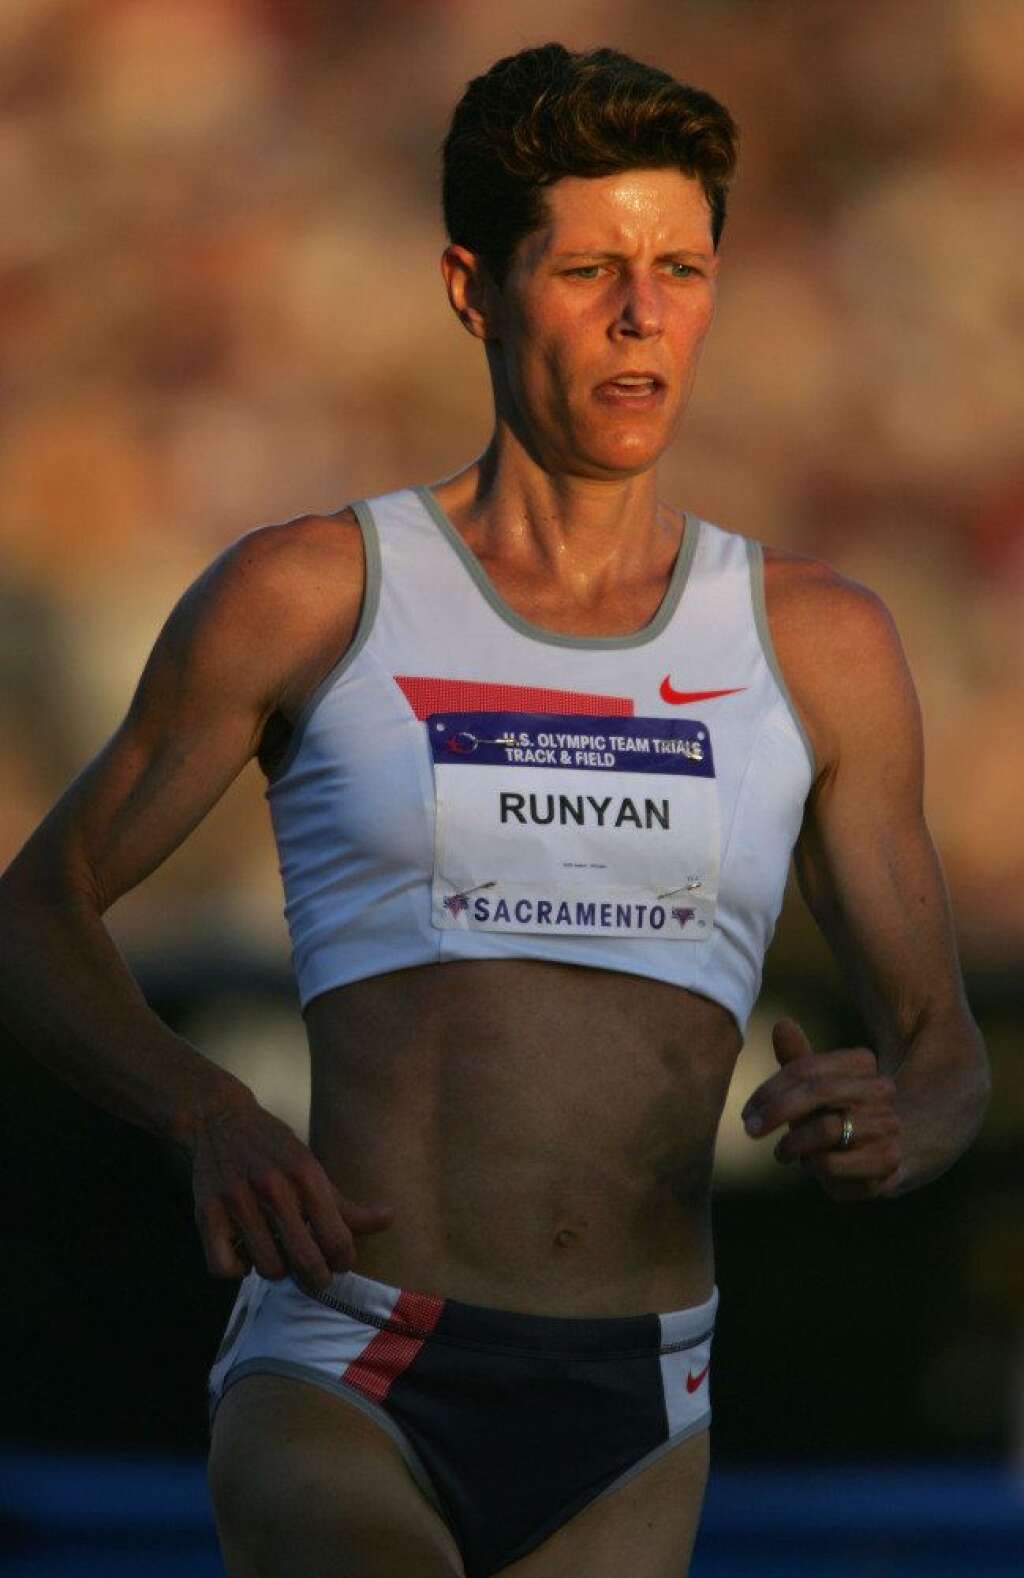 Marla Runyan, athlétisme (États-Unis) - Première athlète aveugle à être alignée aux JO, à Sydney en 2000. Bien plus qu'une simple participation, Marla Runyan s'était qualifiée pour la finale du 1500 m en athlétisme et avait même terminé 8e de la course. Deux ans plus tard, au marathon de New York, elle finira première Américaine.